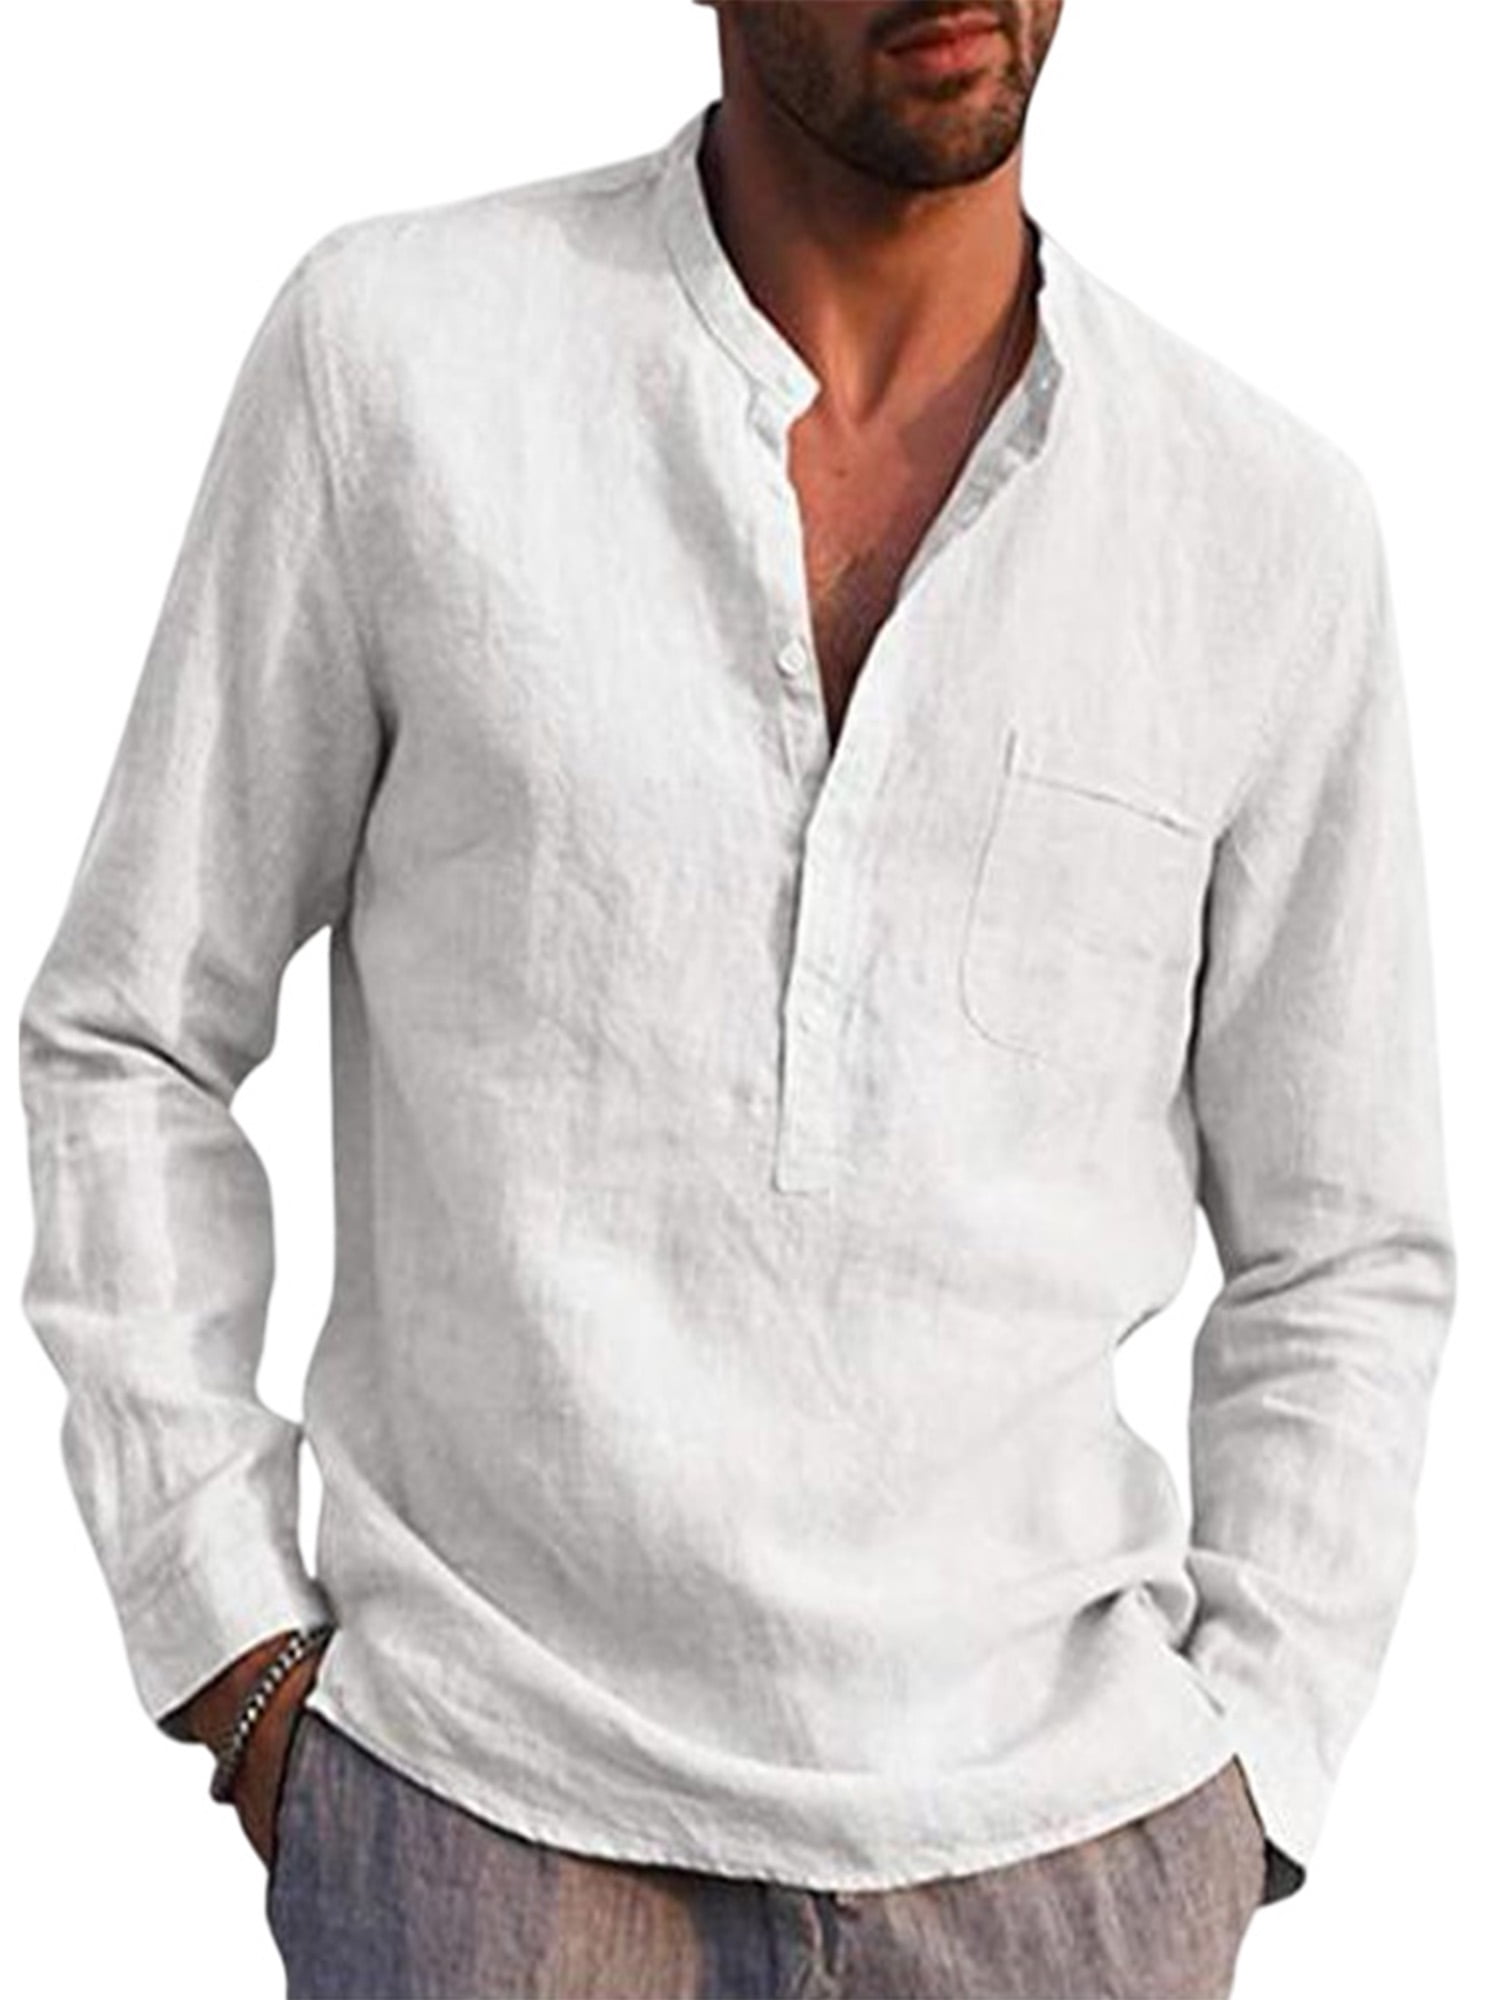 Mens Linen Shirts Long Sleeve Casual Button Down Cotton Lightweight Beach Summer Shirts 